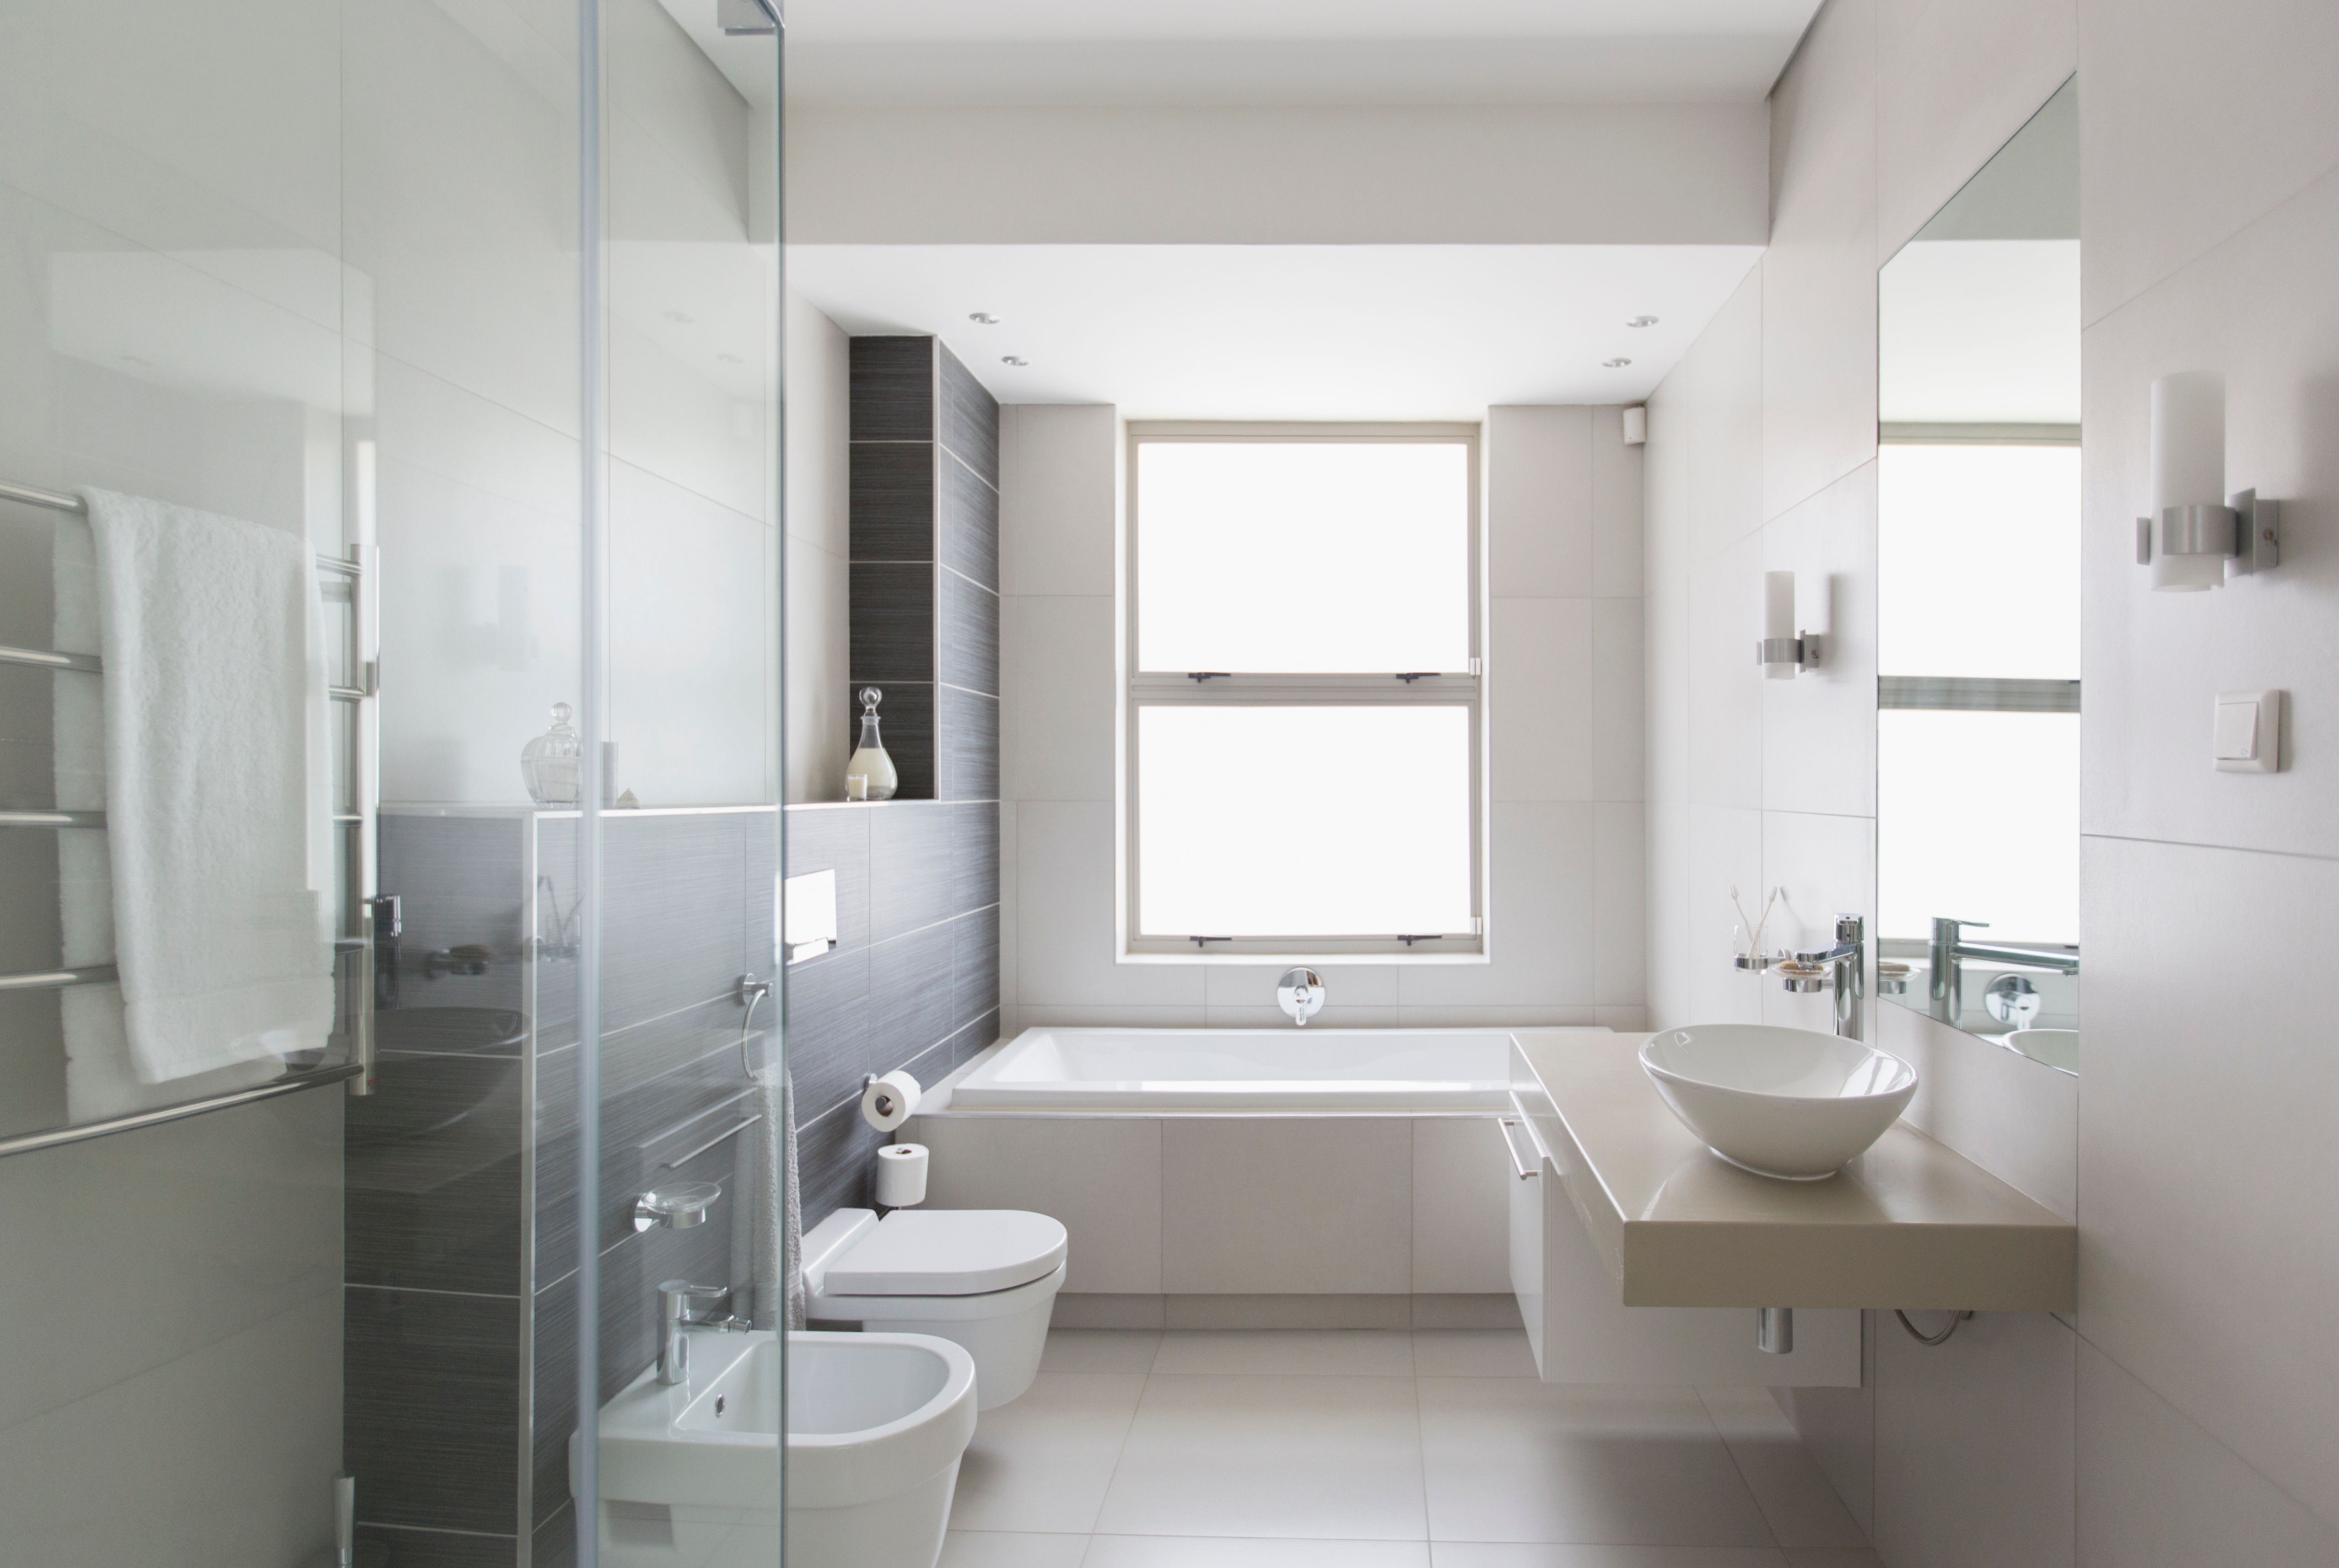 9 exemples de meubles fonctionnels pour salle de bain